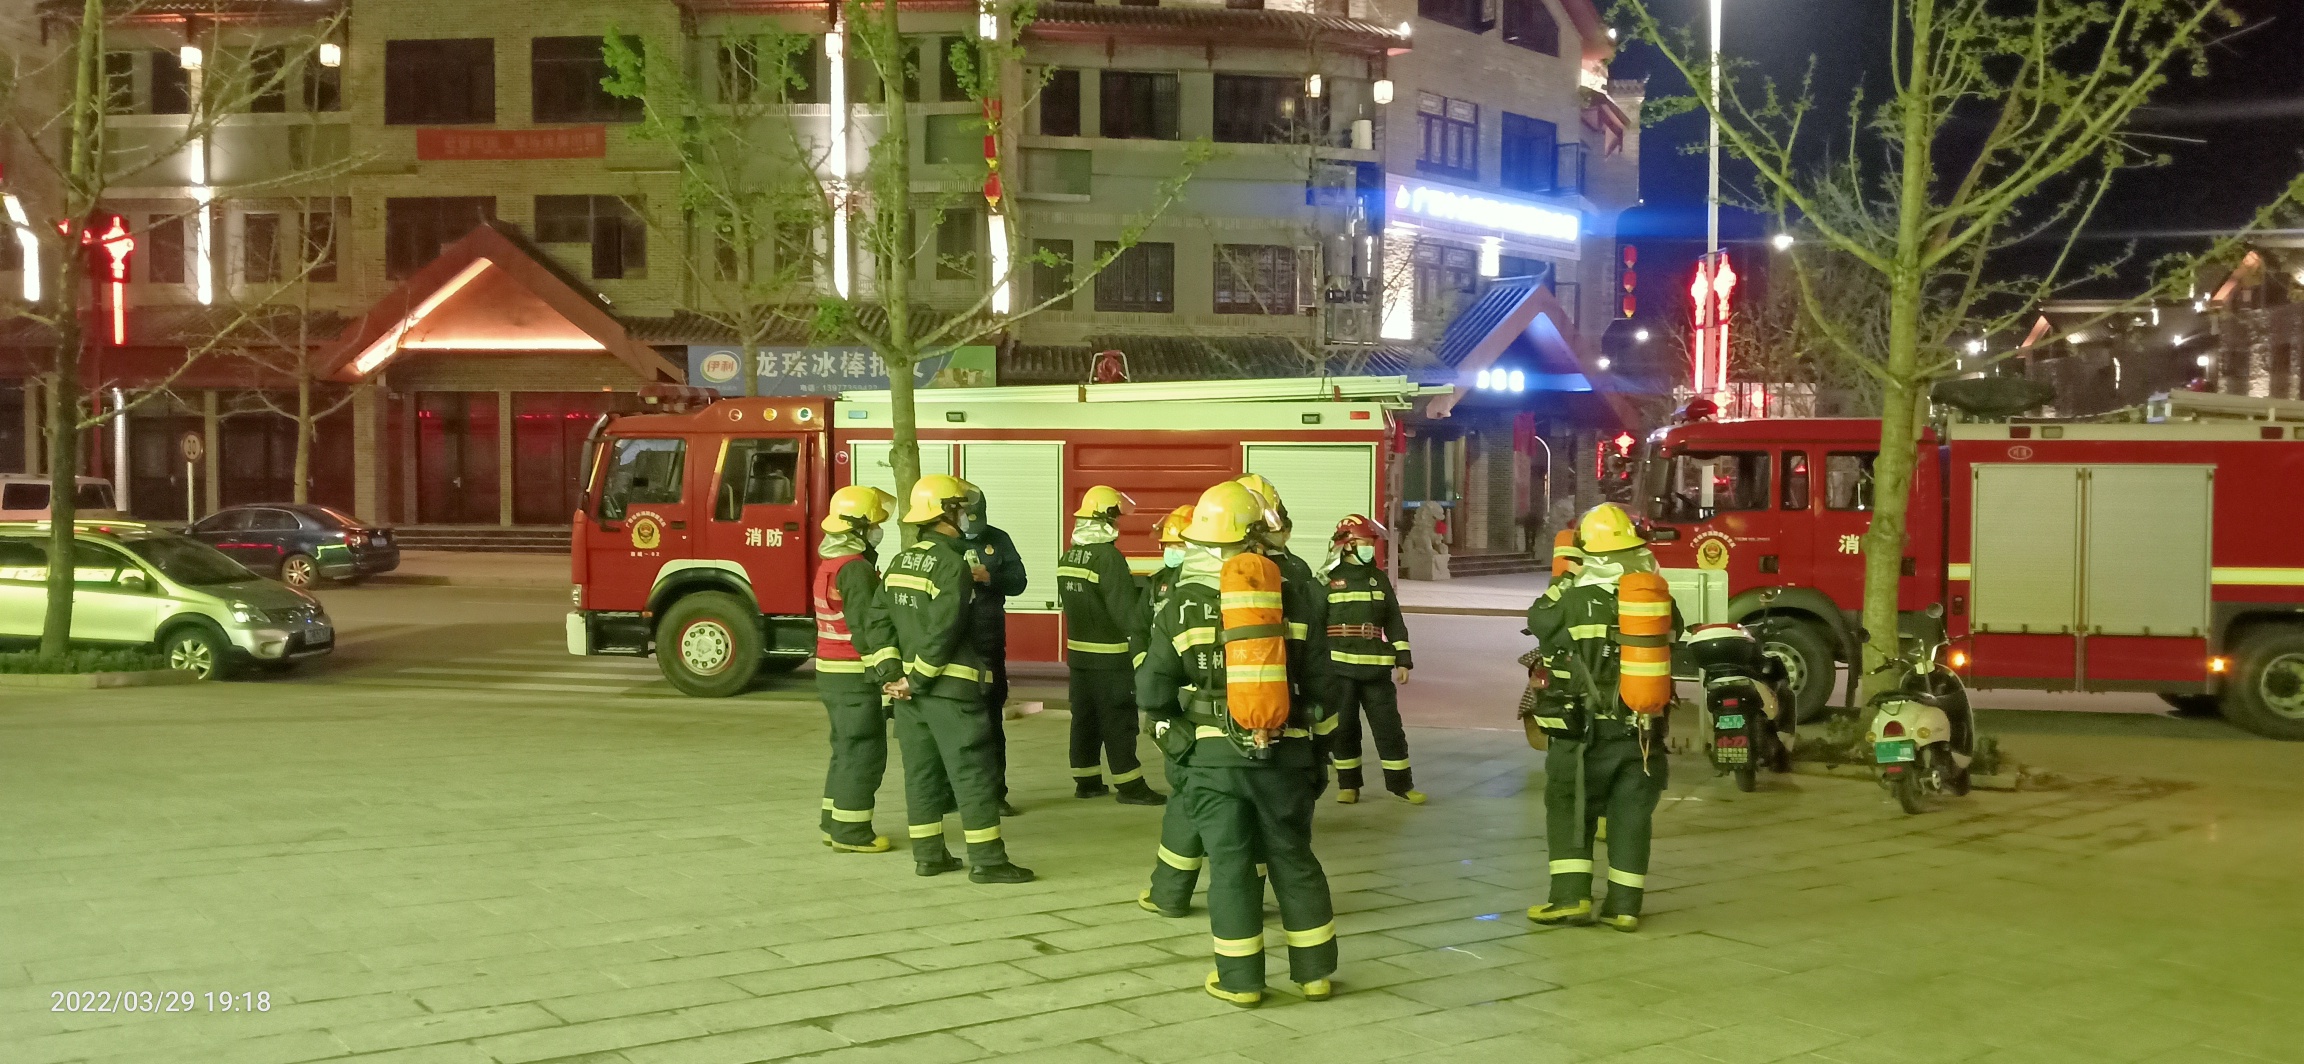 昨晚偶遇消防人员在油茶小镇的六福超市演练消防685 / 作者:陈爱国 / 帖子ID:294073